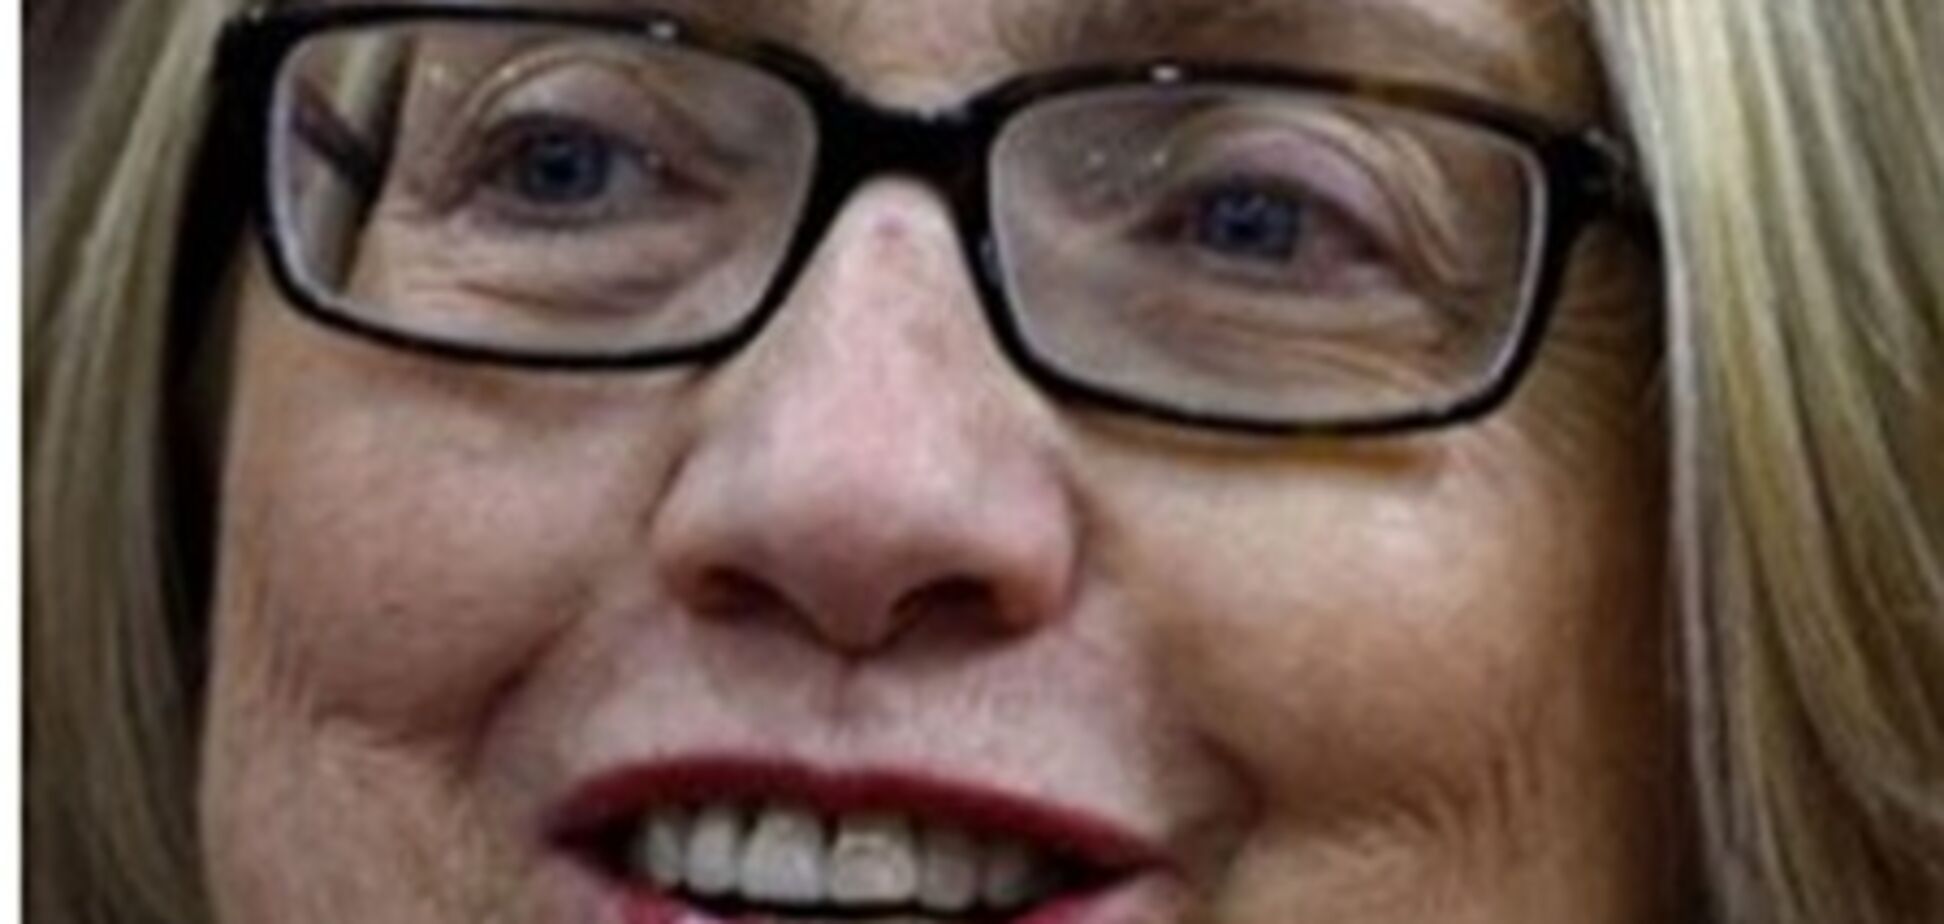 Фото Хиллари Клинтон без макияжа вызвали скандал